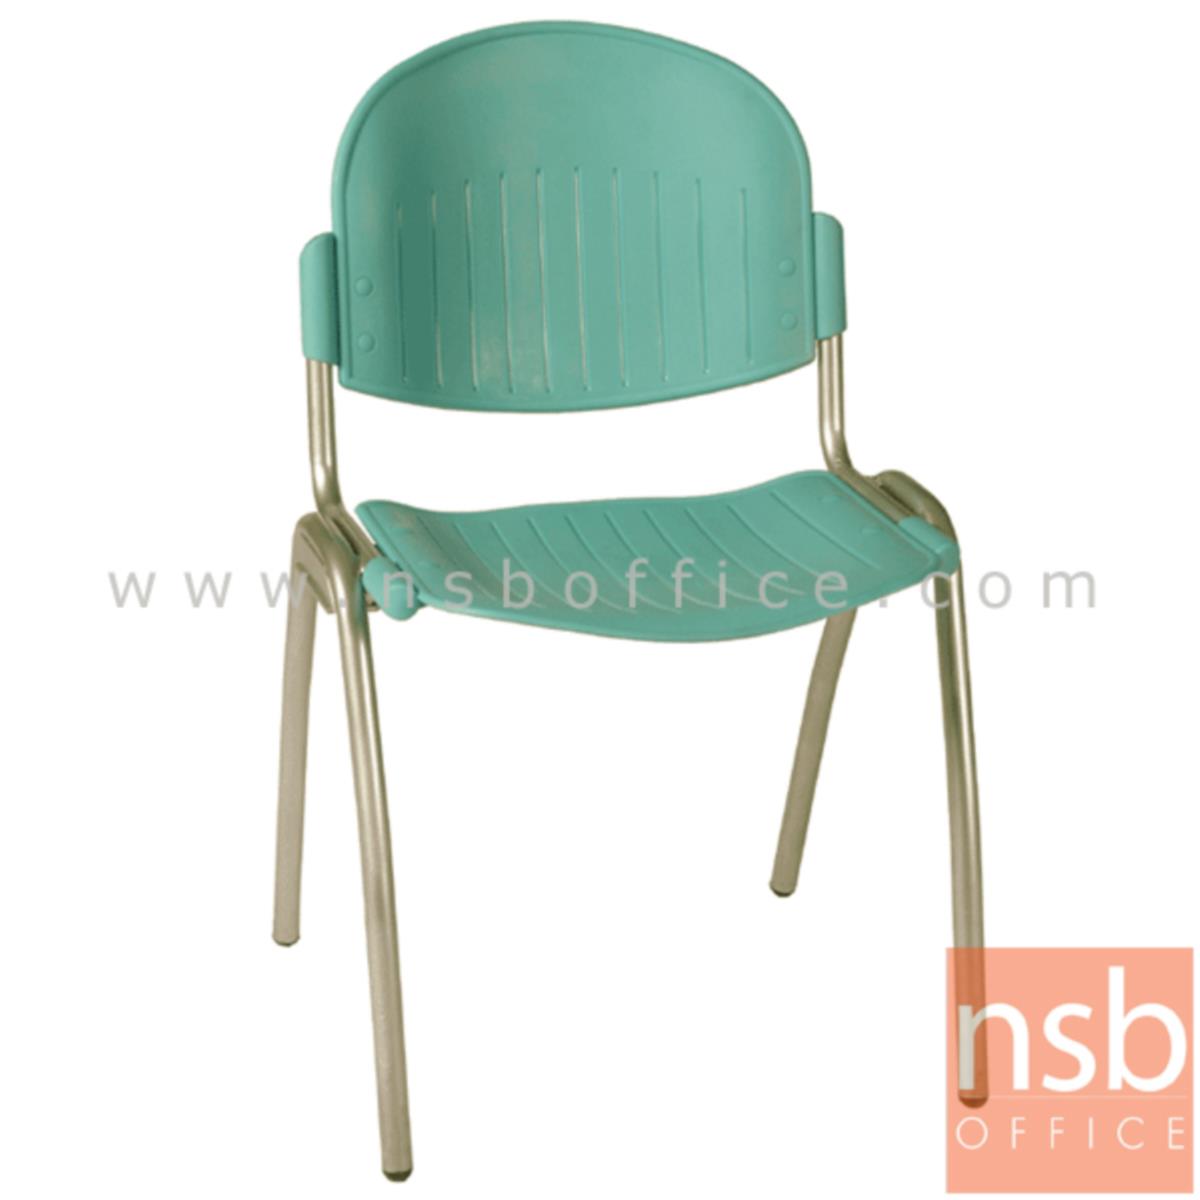 เก้าอี้อเนกประสงค์เฟรมโพลี่ รุ่น A056-446  ขาเหล็ก